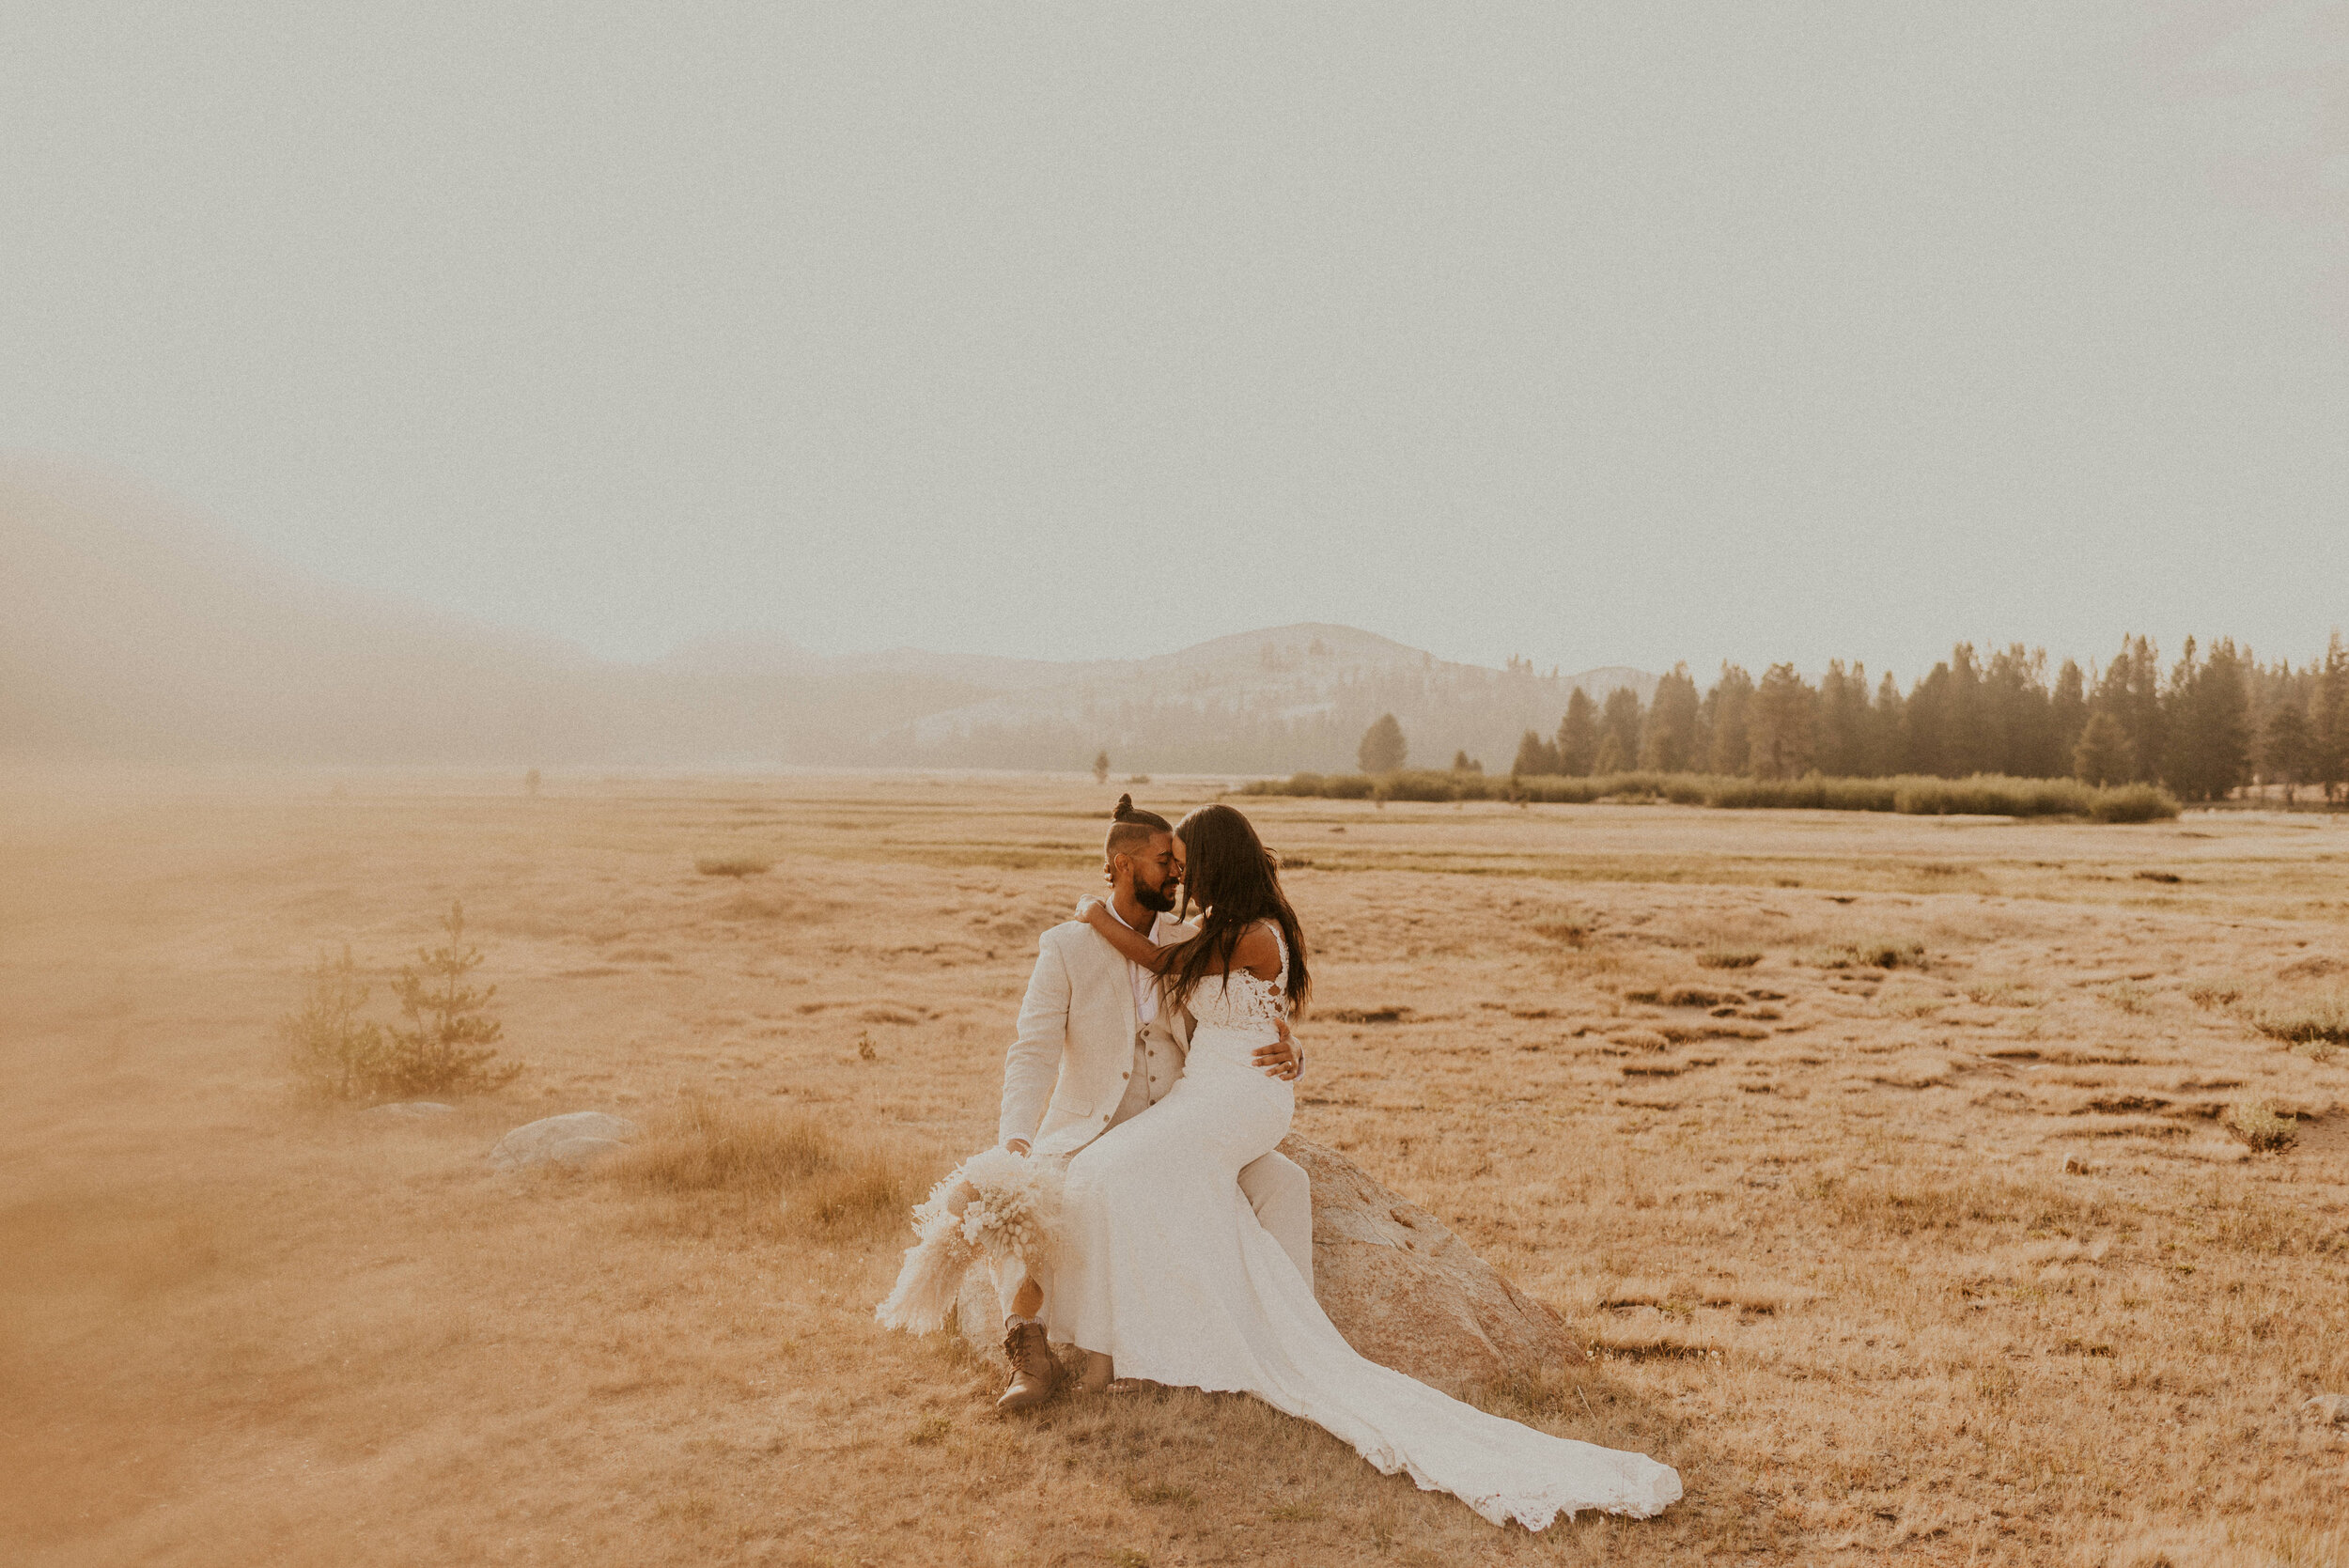 Tuolumne Meadows Elopement | Eloping in Yosemite National Park | Adventure Elopement Wedding | Yosemite Elopement Photographer 